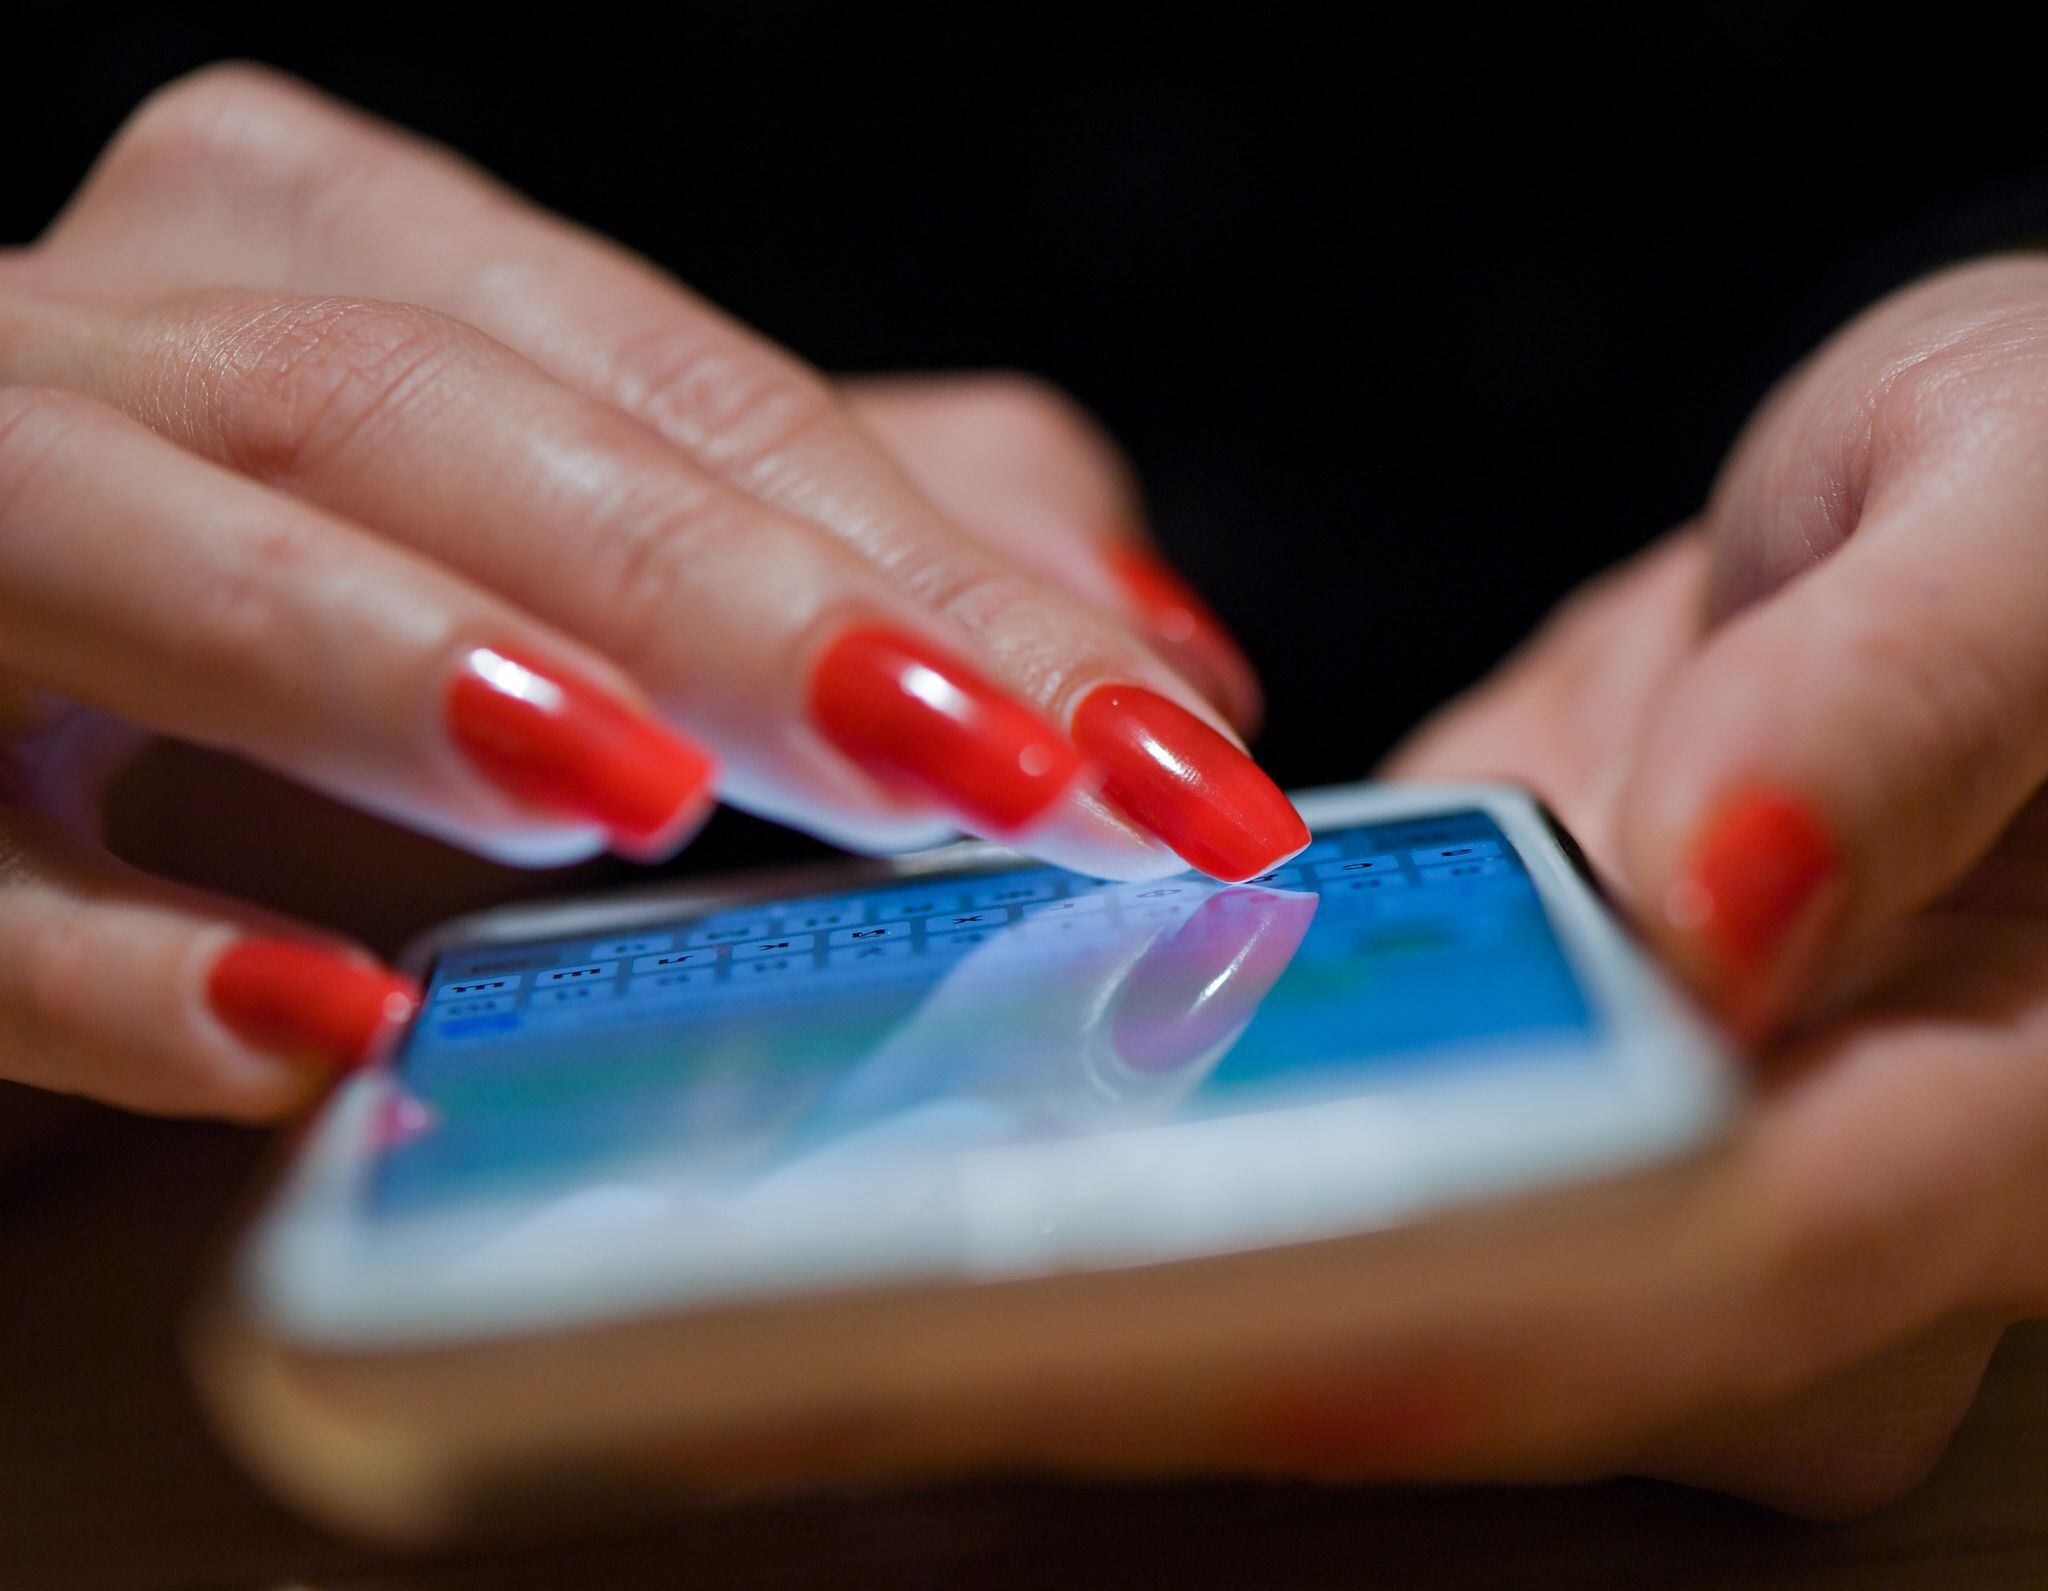  Una mujer escribe un mensaje en su móvil. (Patrick Pleul/dpa)